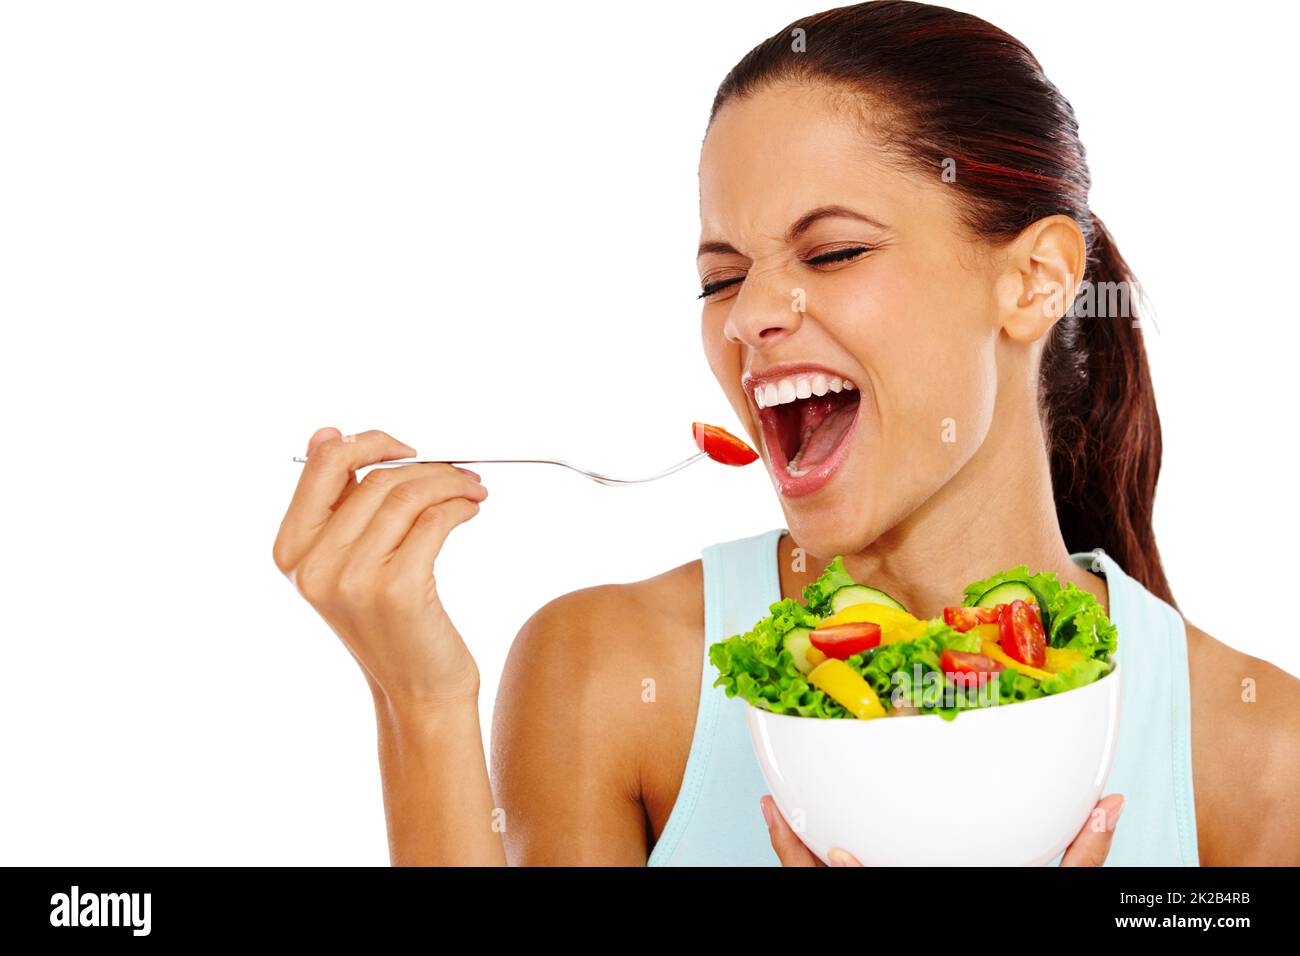 La salade est la meilleure. Portrait d'une jeune femme attrayante mangeant une salade saine avec ses yeux fermés. Banque D'Images